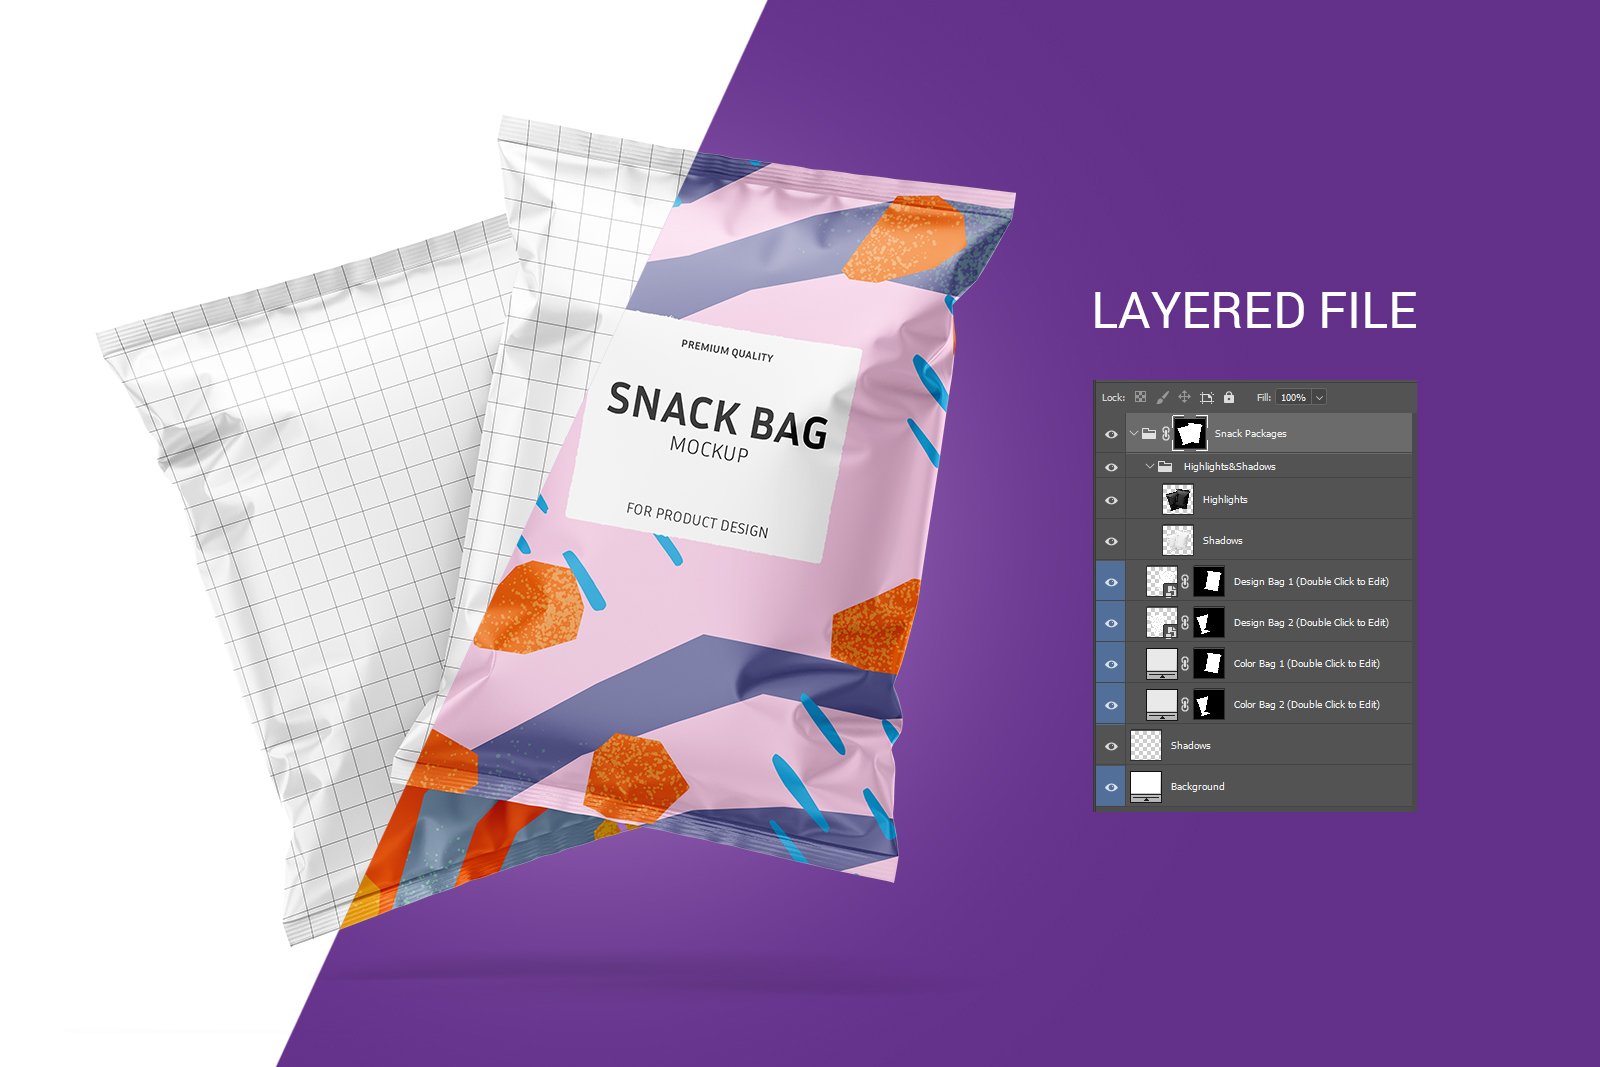 膨化薯片零食包装袋设计展示样机Snack bag mockup set